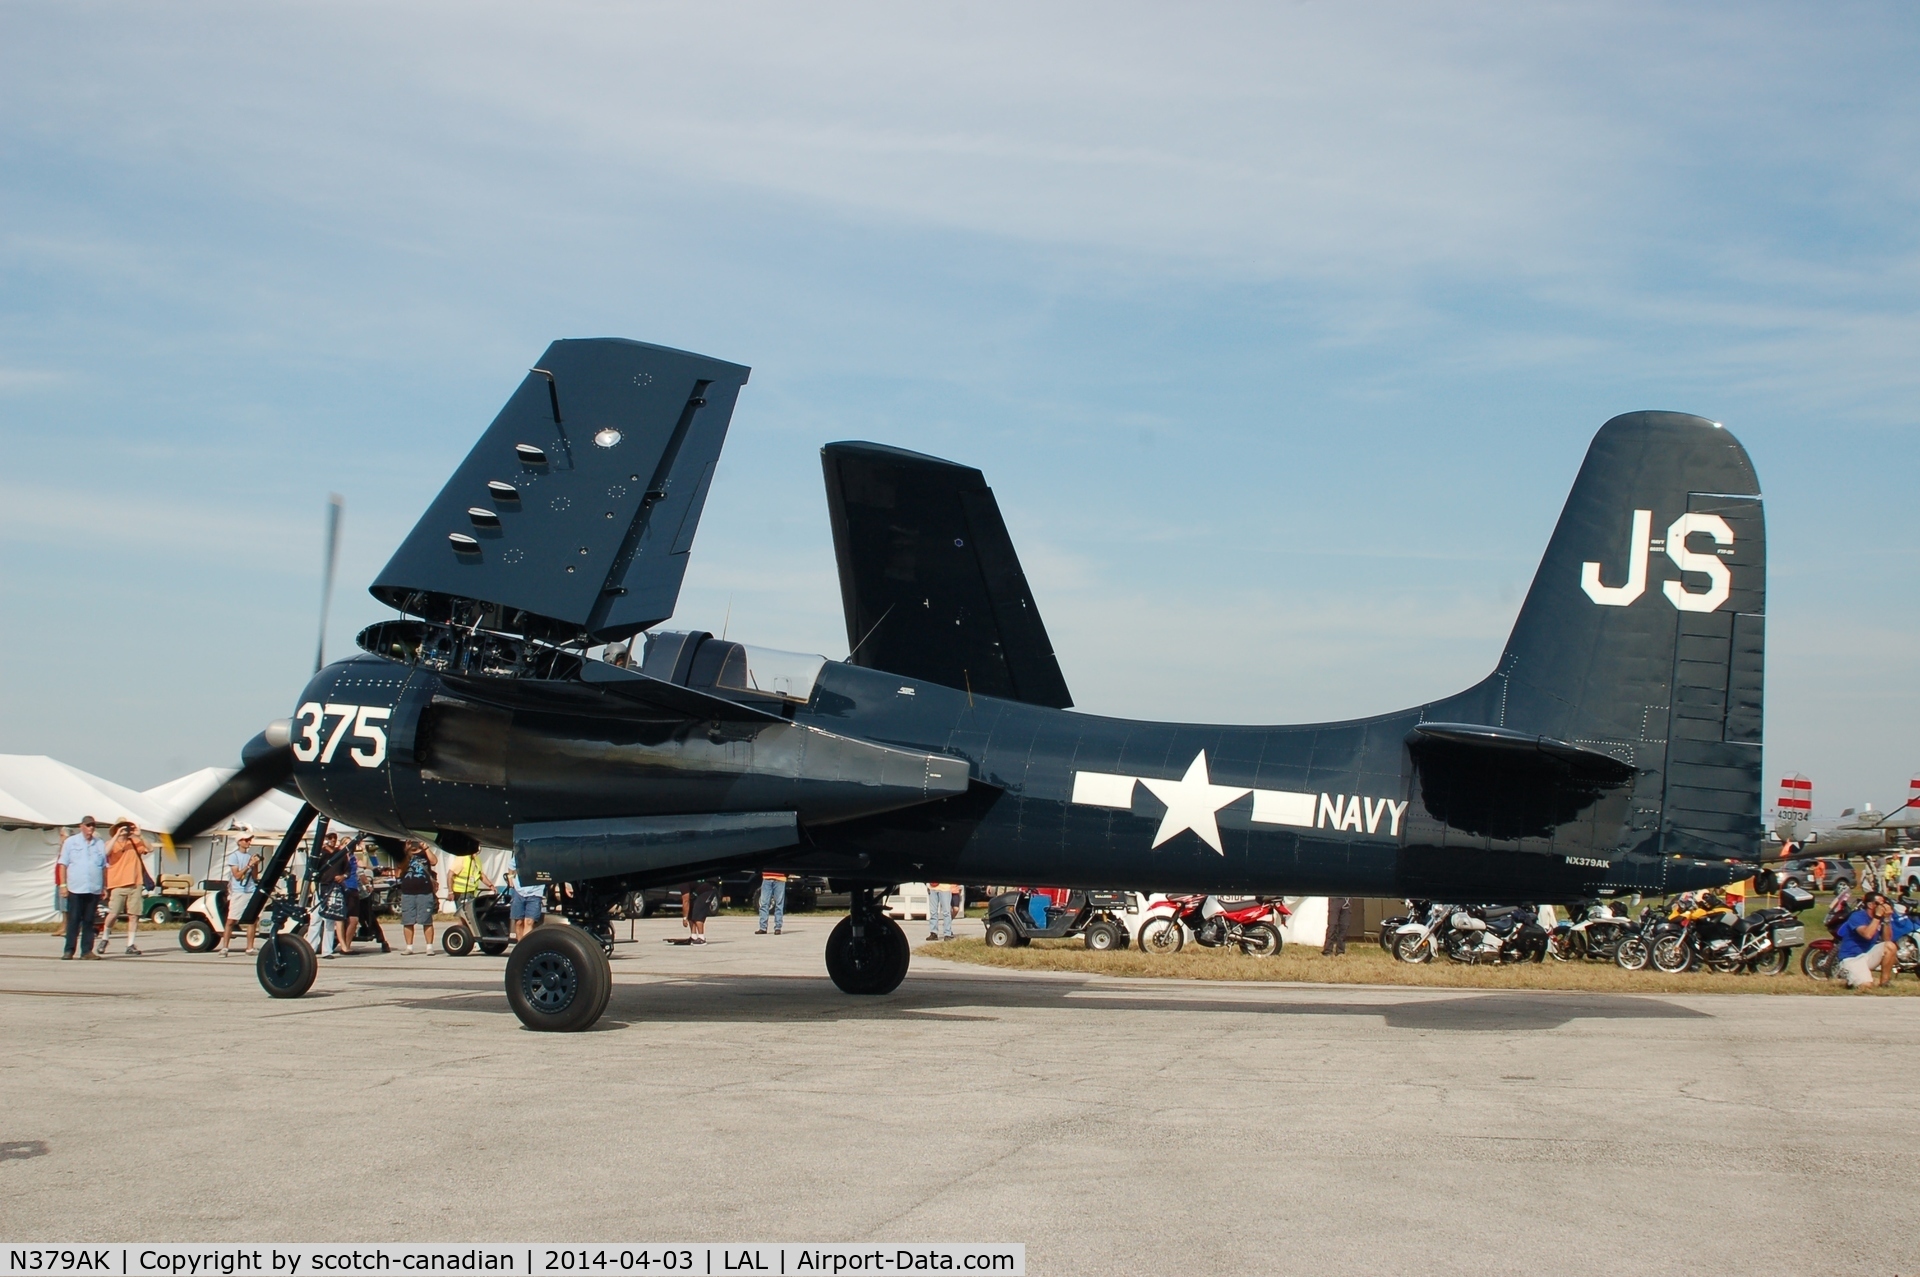 N379AK, Grumman F7F-3N Tigercat C/N 80375, Grumman F7F-3N, N379FK, at 2014 Sun n Fun, Lakeland Linder Regional Airport, Lakeland, FL